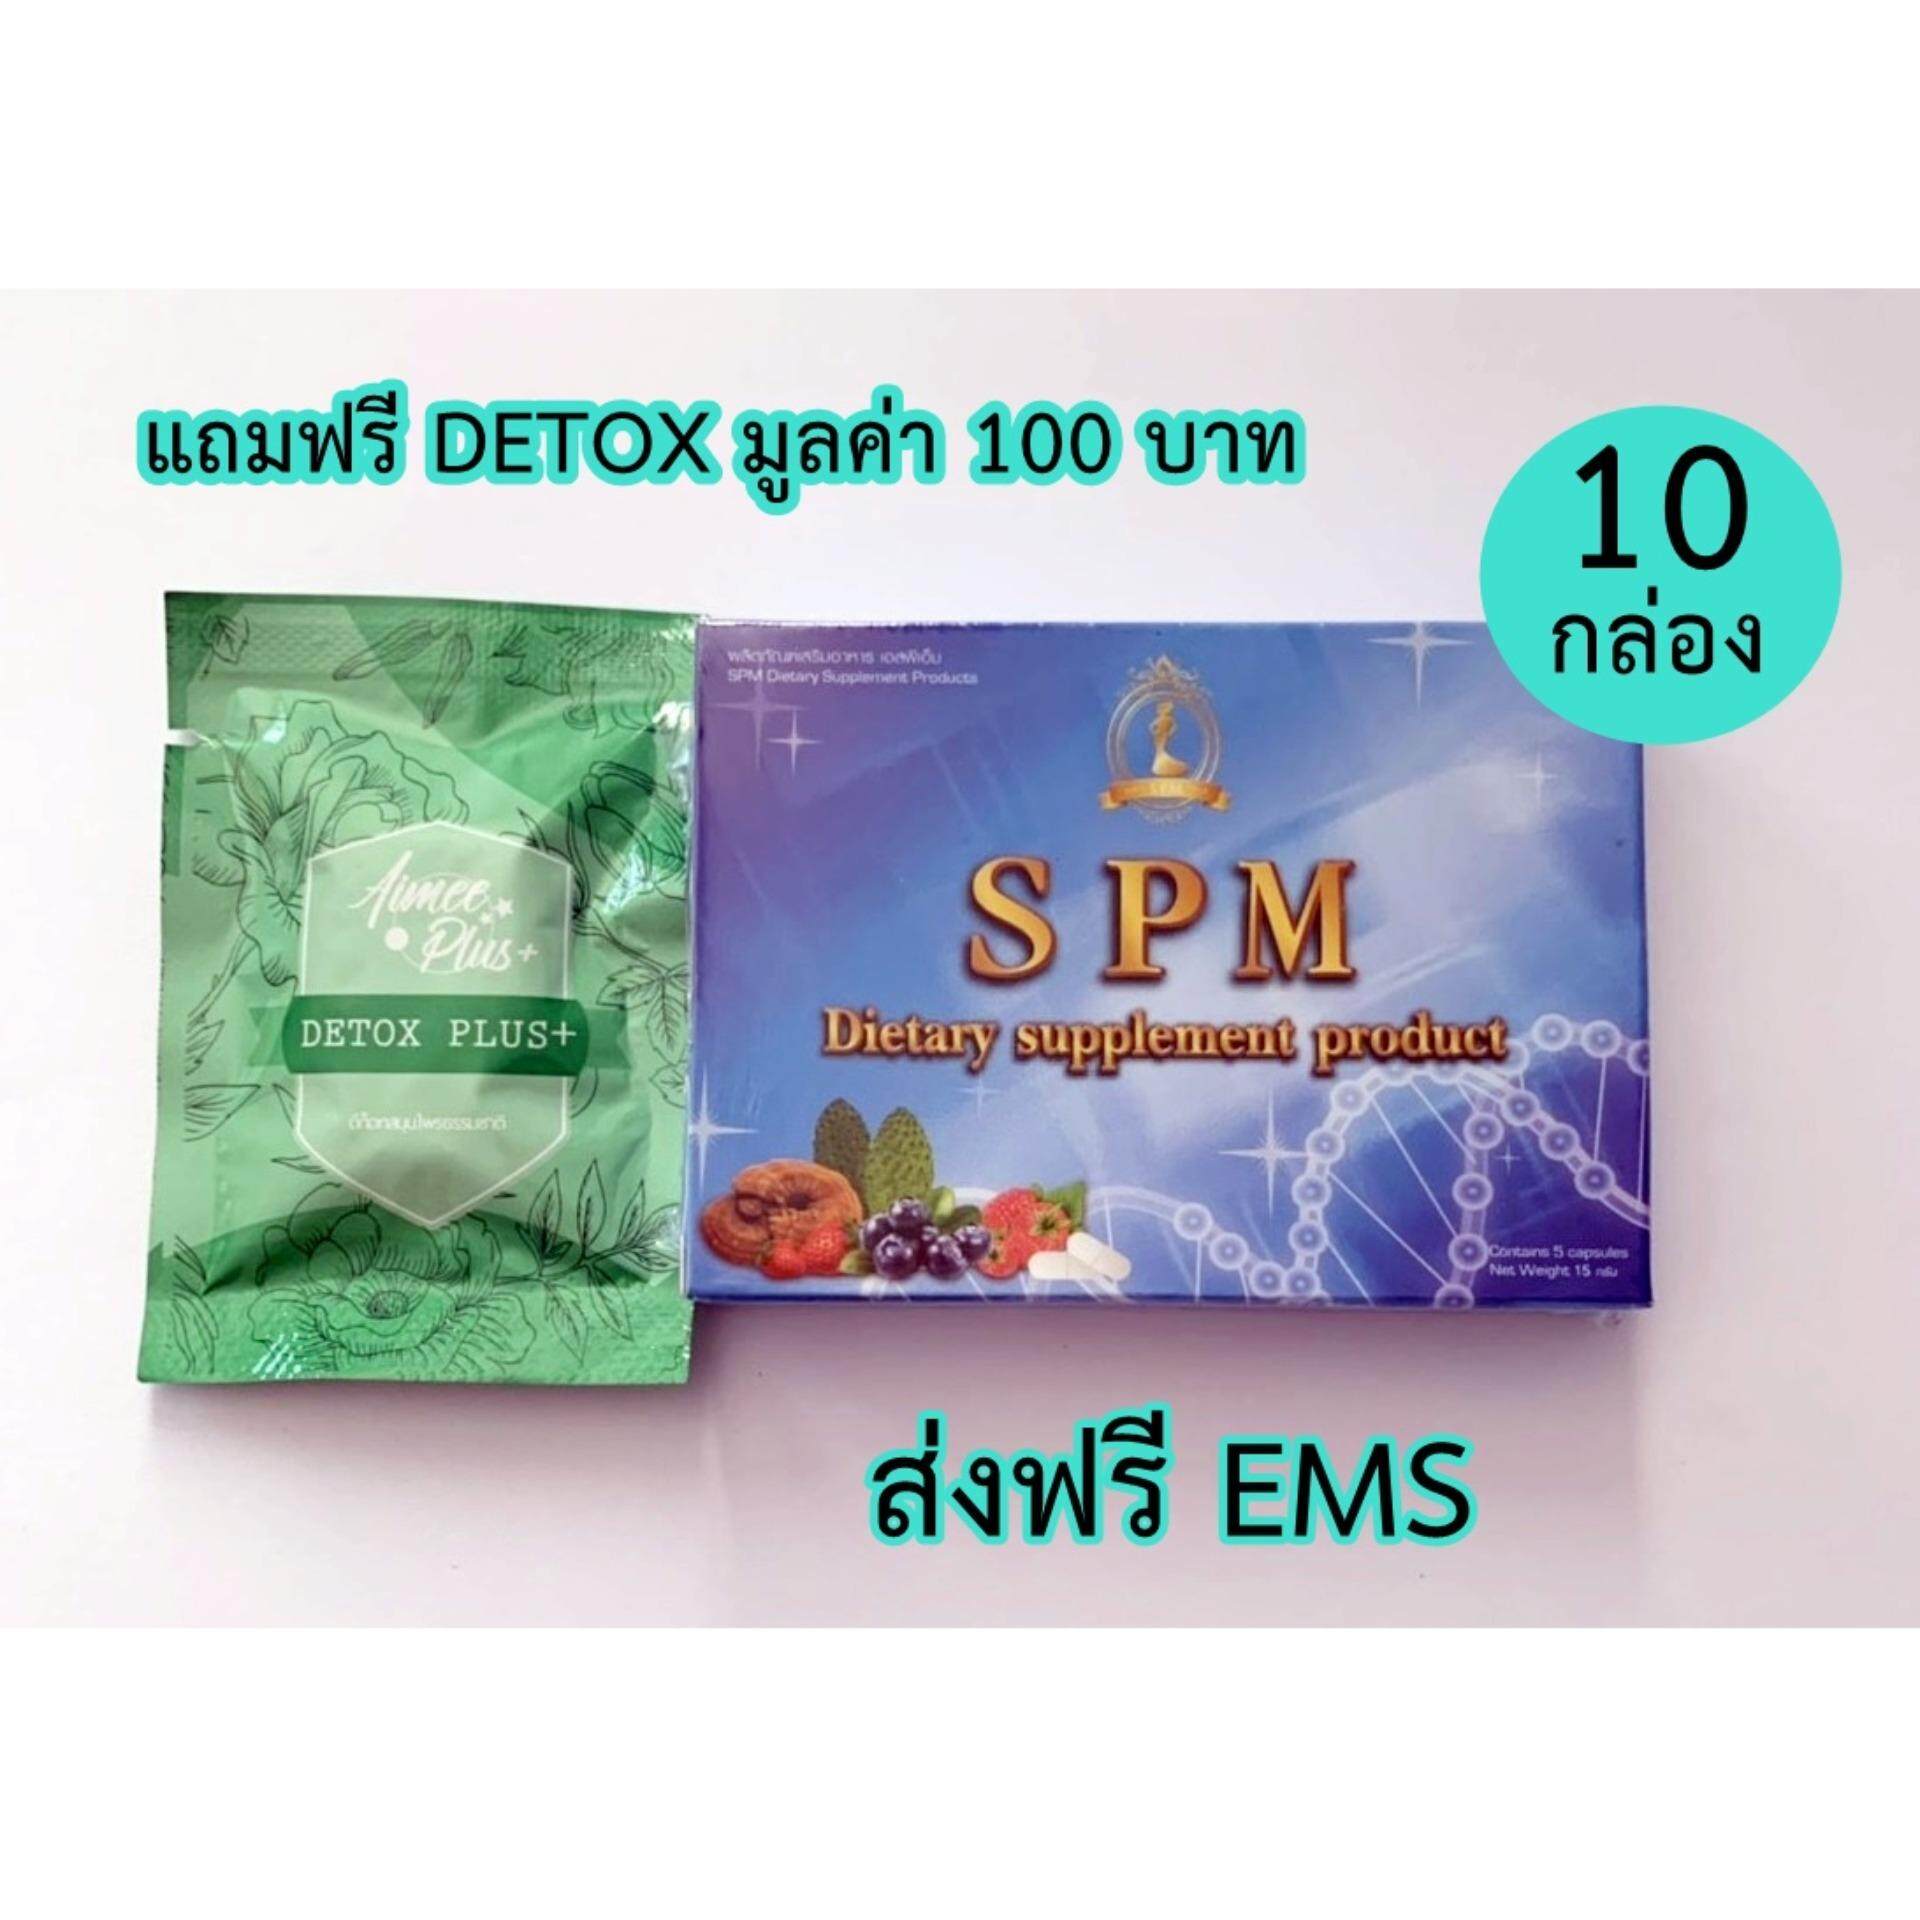 (10 กล่อง) SEE SLIM (ซีสลิม) อาหารเสริมลดน้ำหนัก SPM (1 กล่อง/5 แคปซูล)